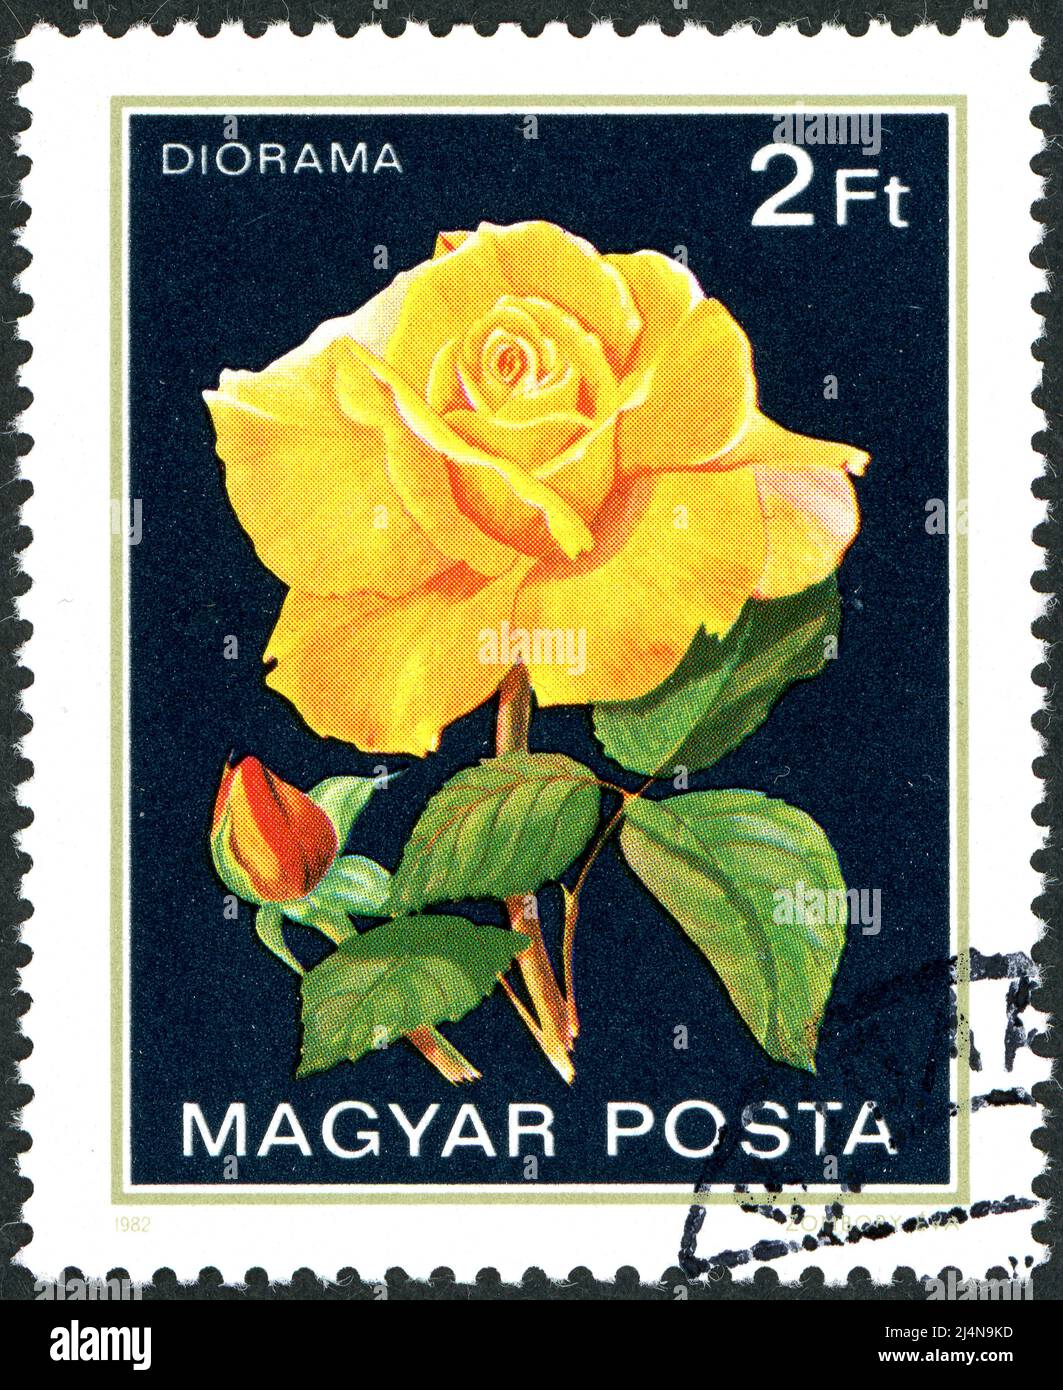 HONGRIE - VERS 1982: Timbre-poste imprimé en Hongrie, avec fleur rose, variété Diorama, vers 1982 Banque D'Images